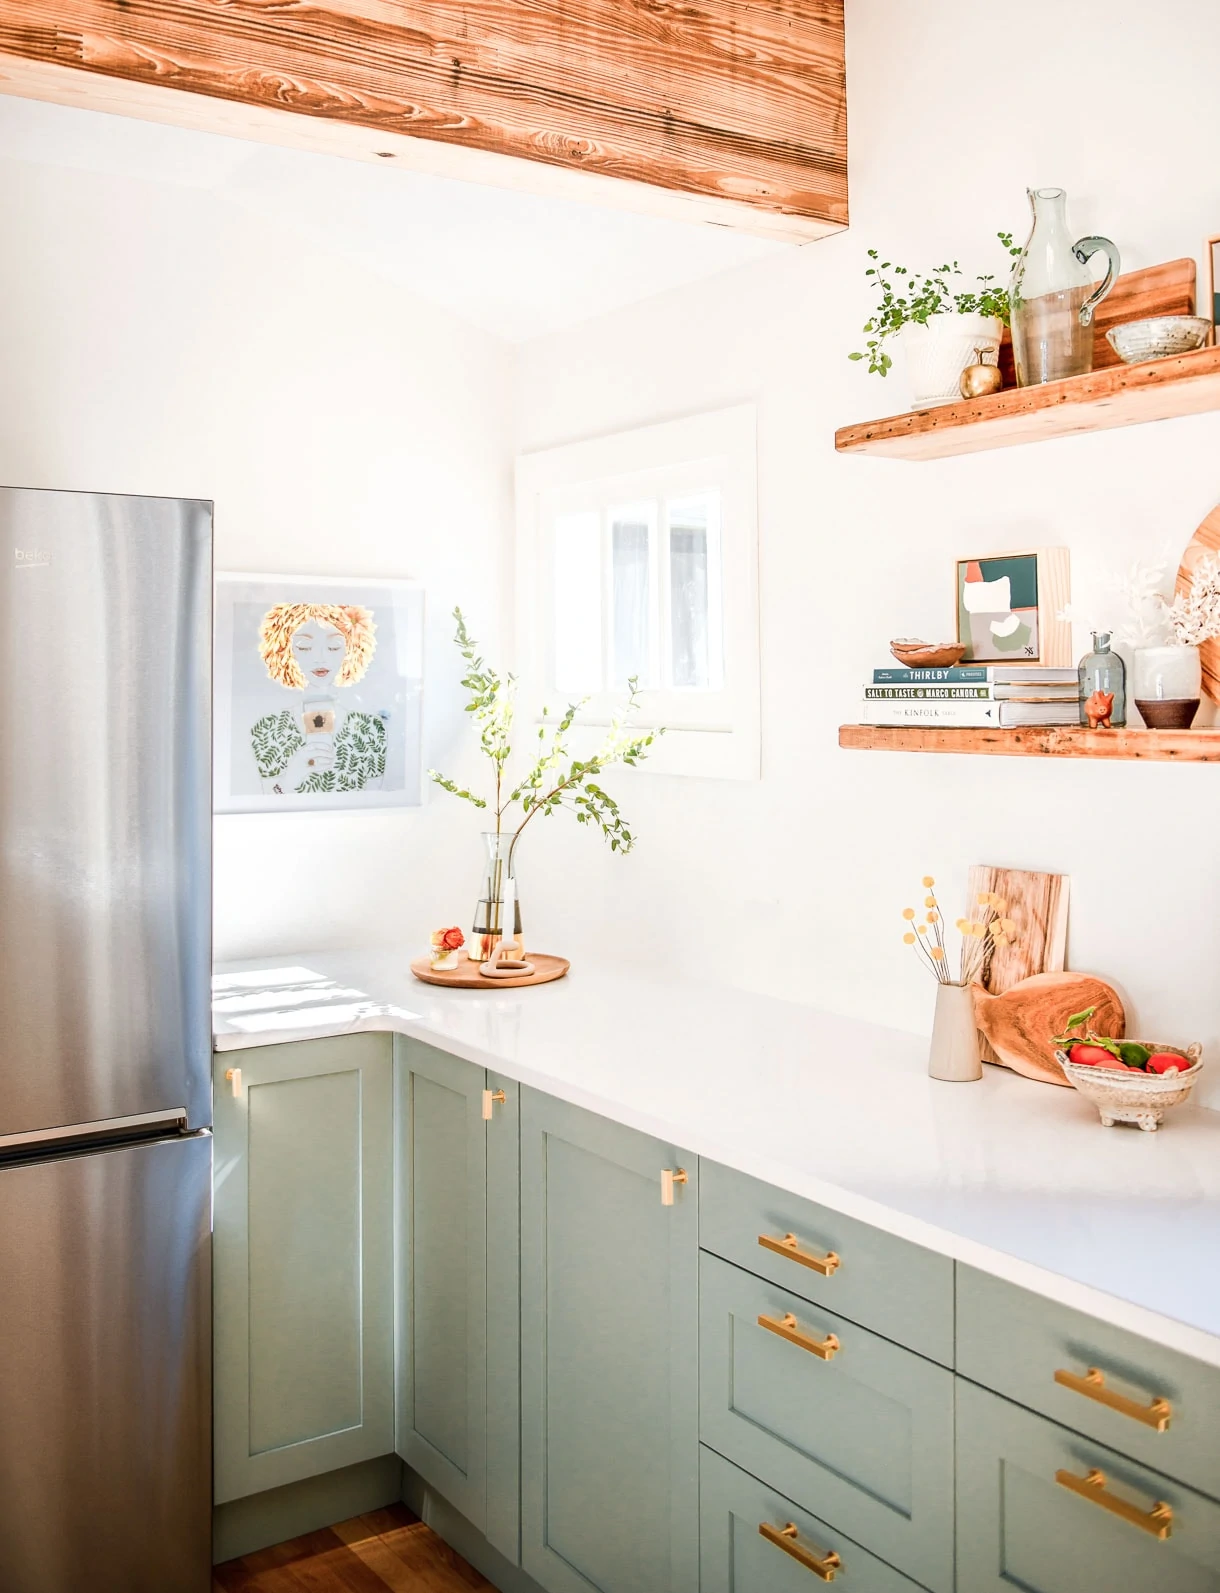 sage green kitchen cabinets, white kitchen